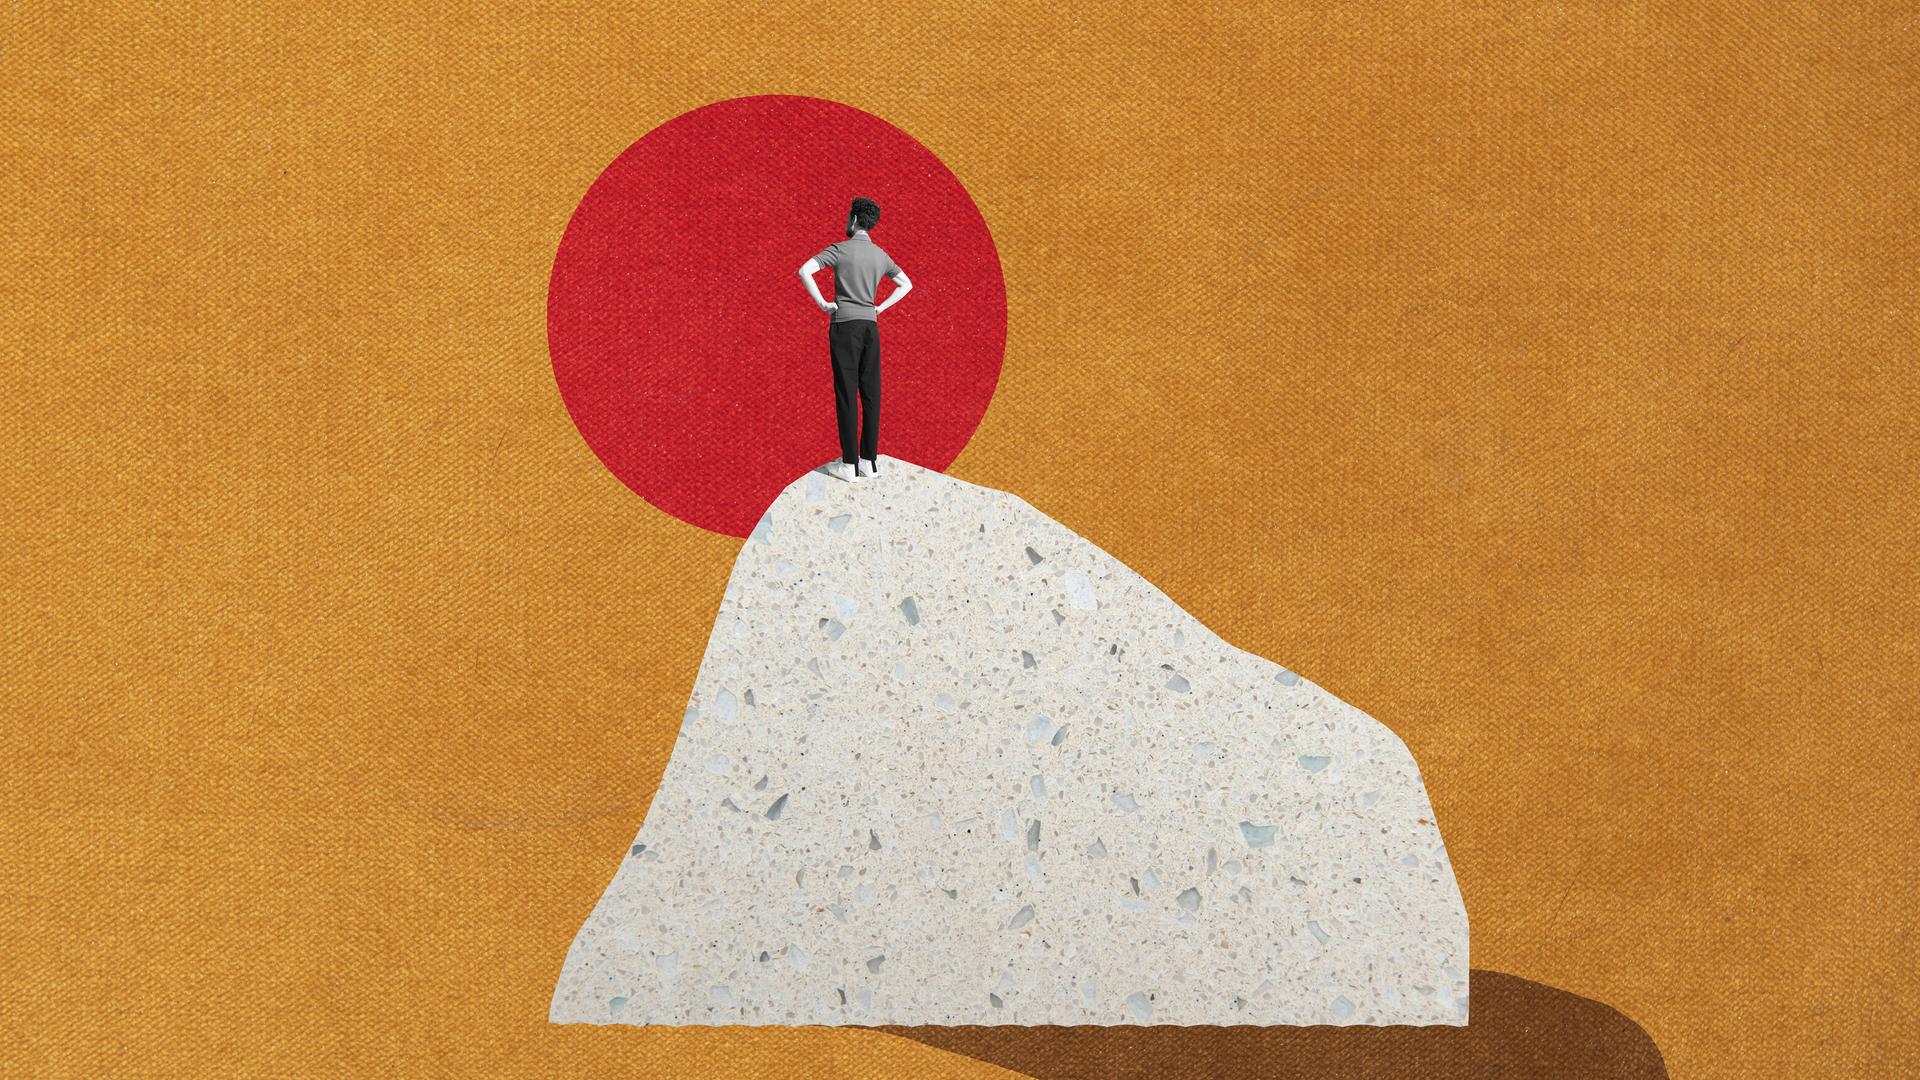 Eine Illustration zeigt einen Mann, der auf einem Hügel steht und in einen sonnenartigen, roten Kreis schaut.